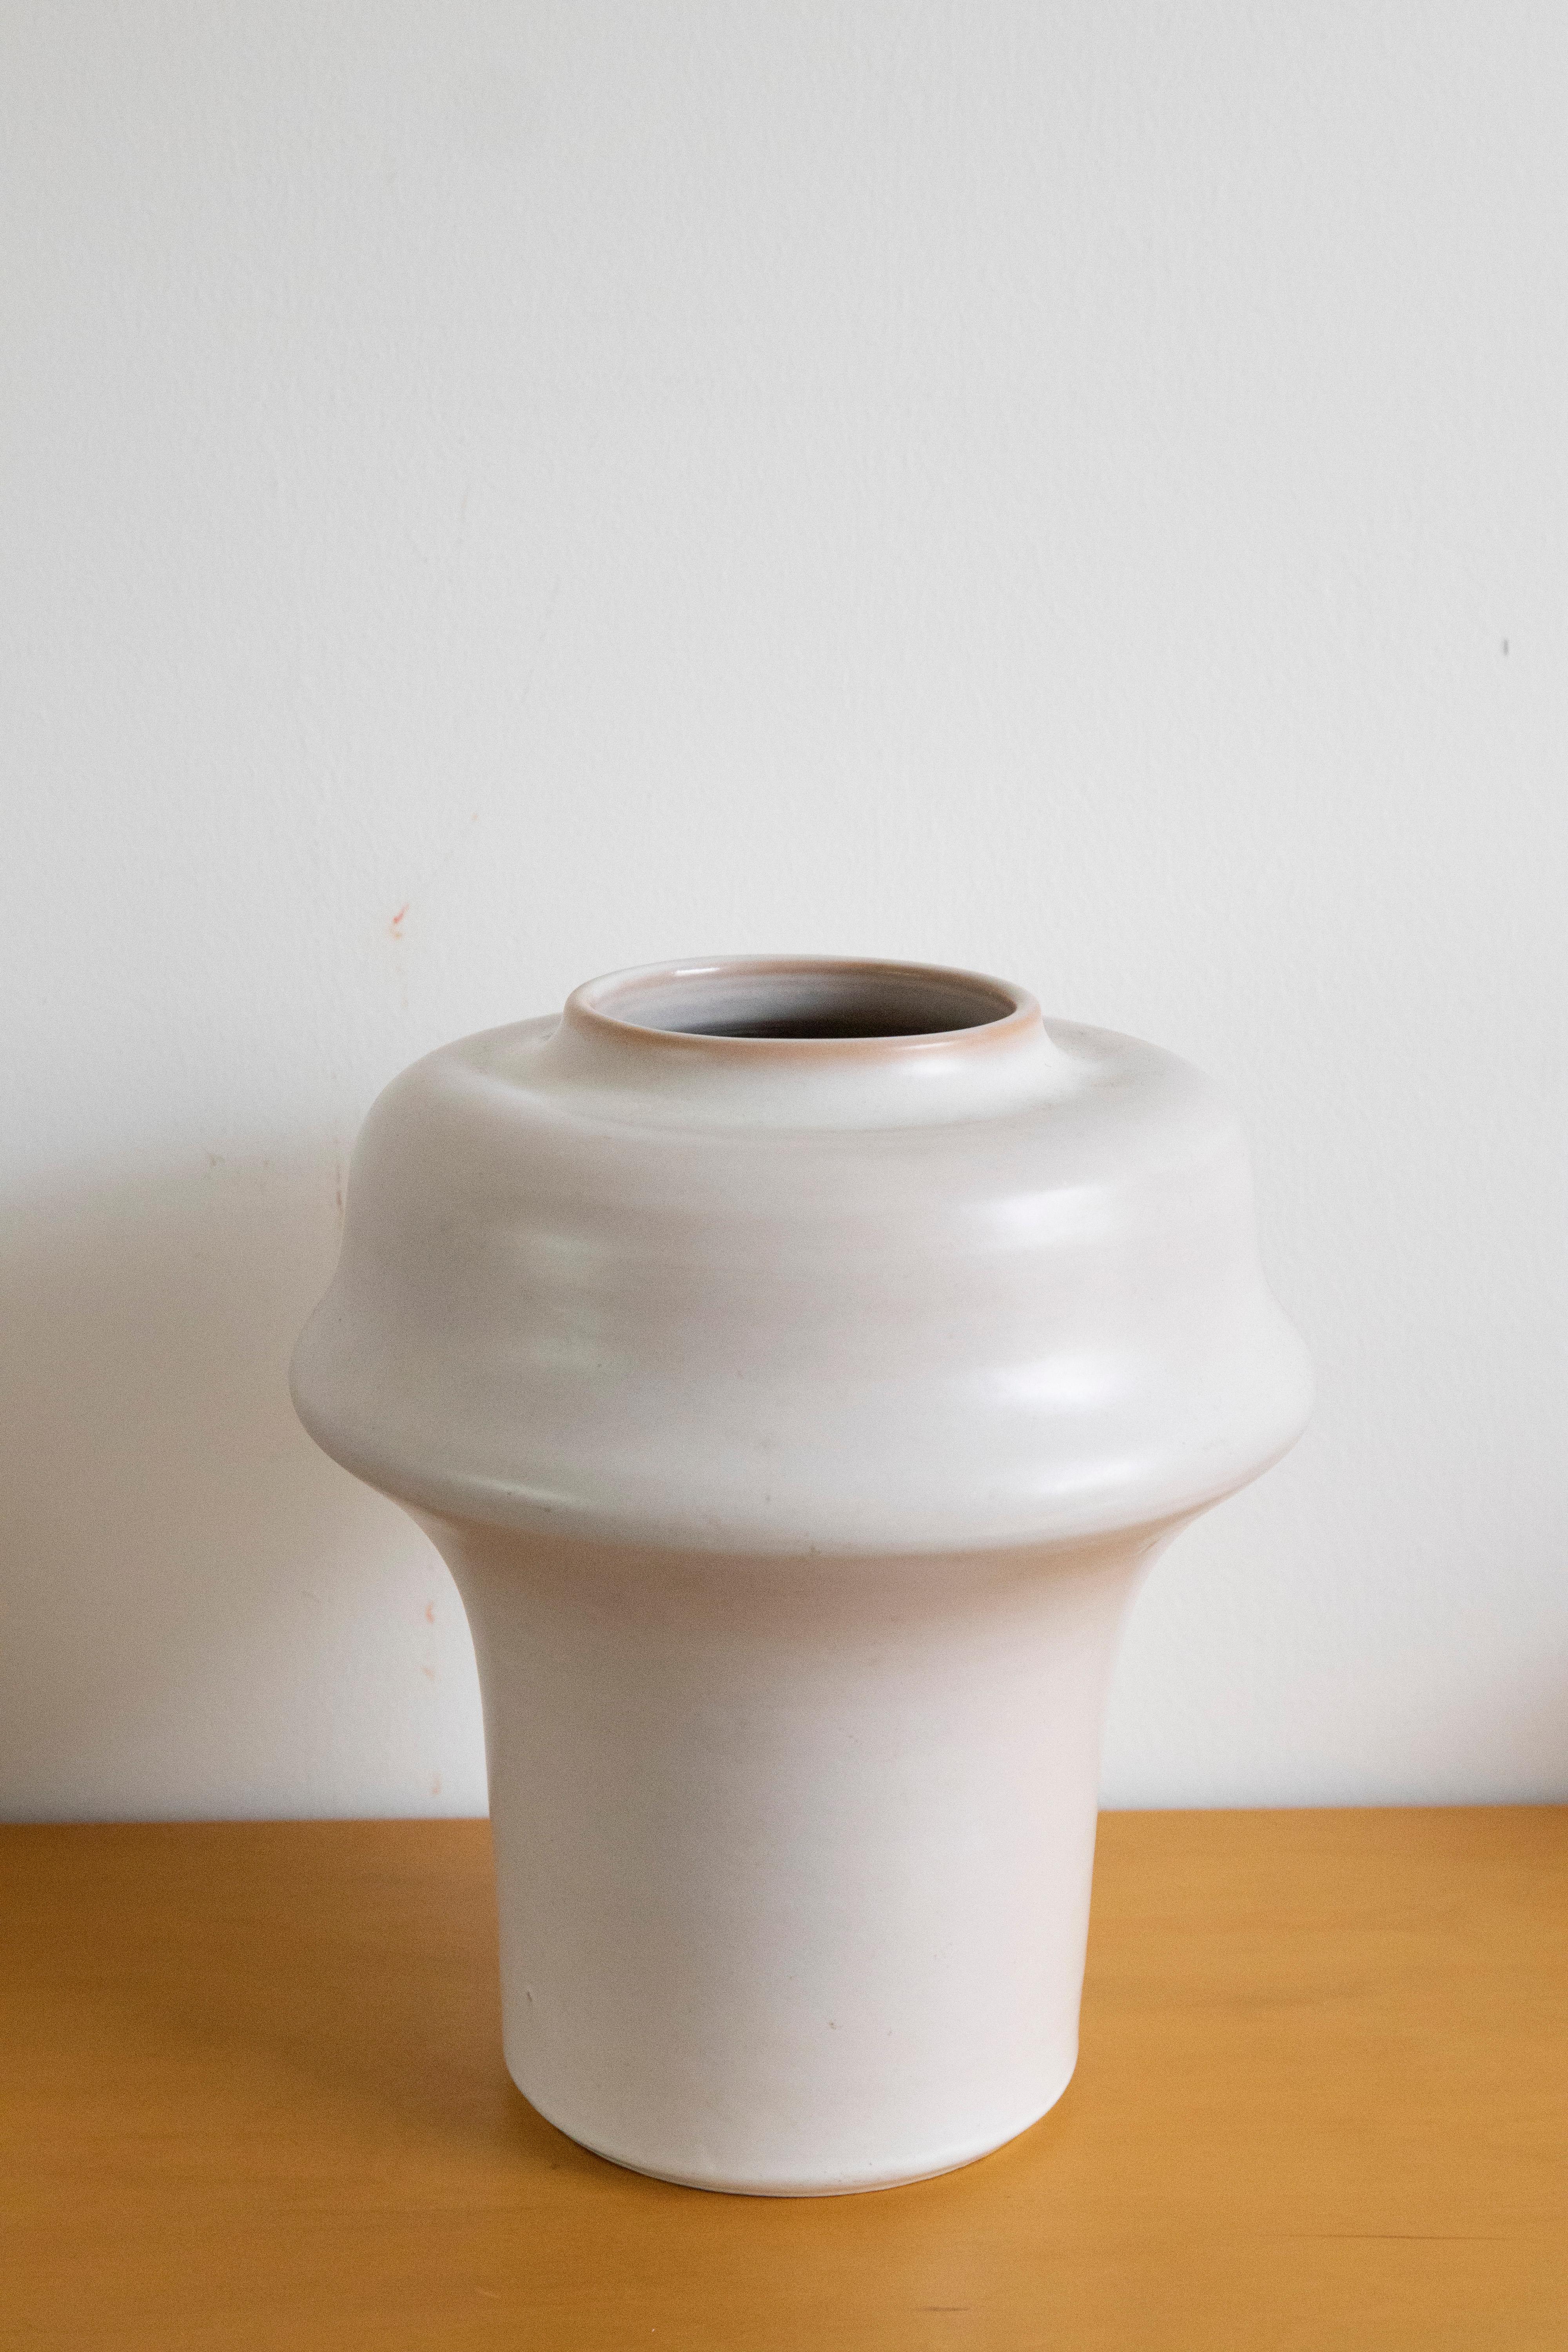 Aldo Londi, vaso Serie Etrusco per Bitossi, Etrusco

Vaso creato da Aldo Londi per Bitossi, della serie Etrusco in smalto bianco opaco. 
Realizzato negli anni 60.
